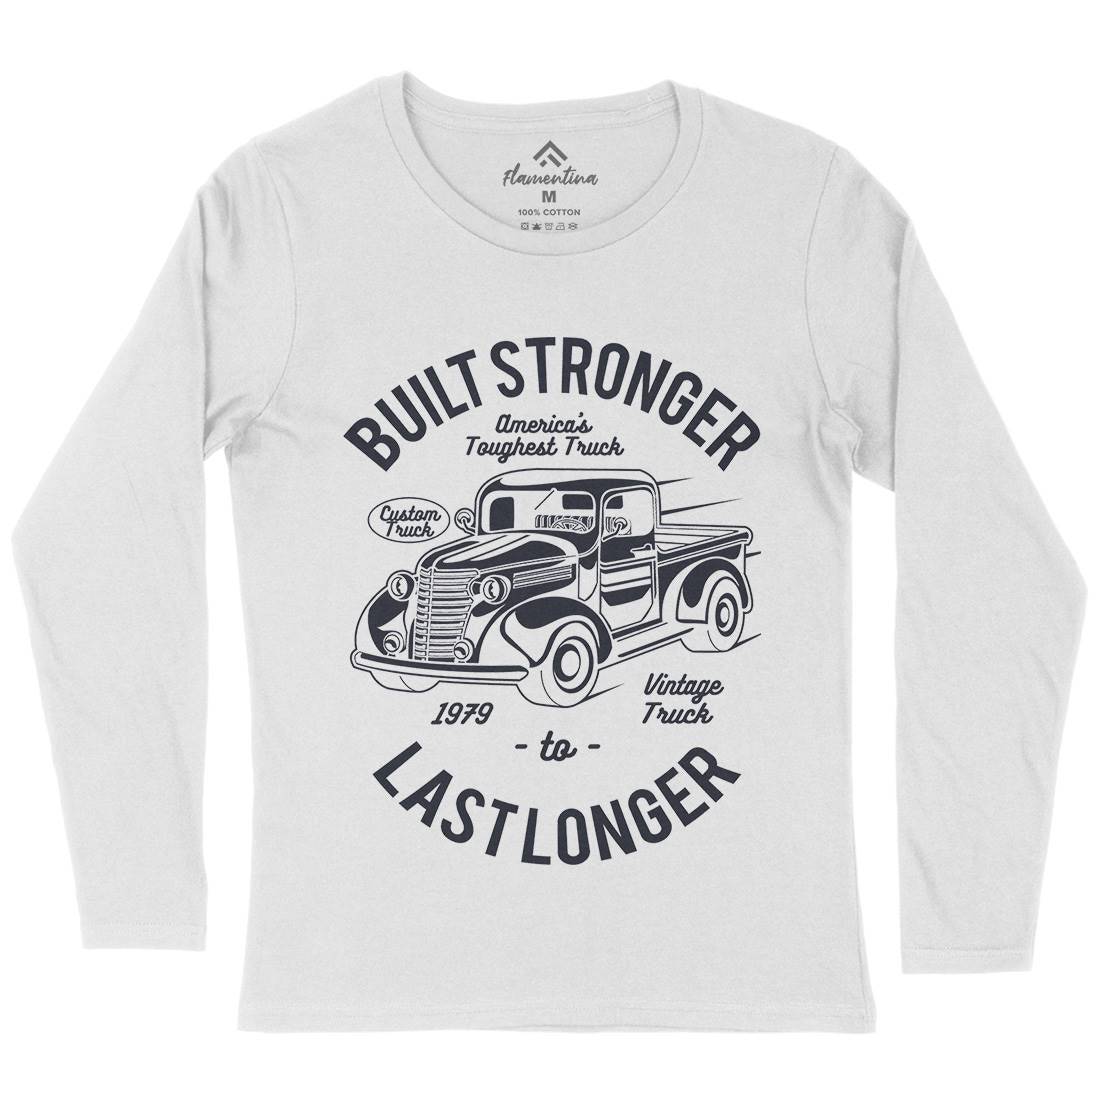 Built Stronger Womens Long Sleeve T-Shirt Cars A023